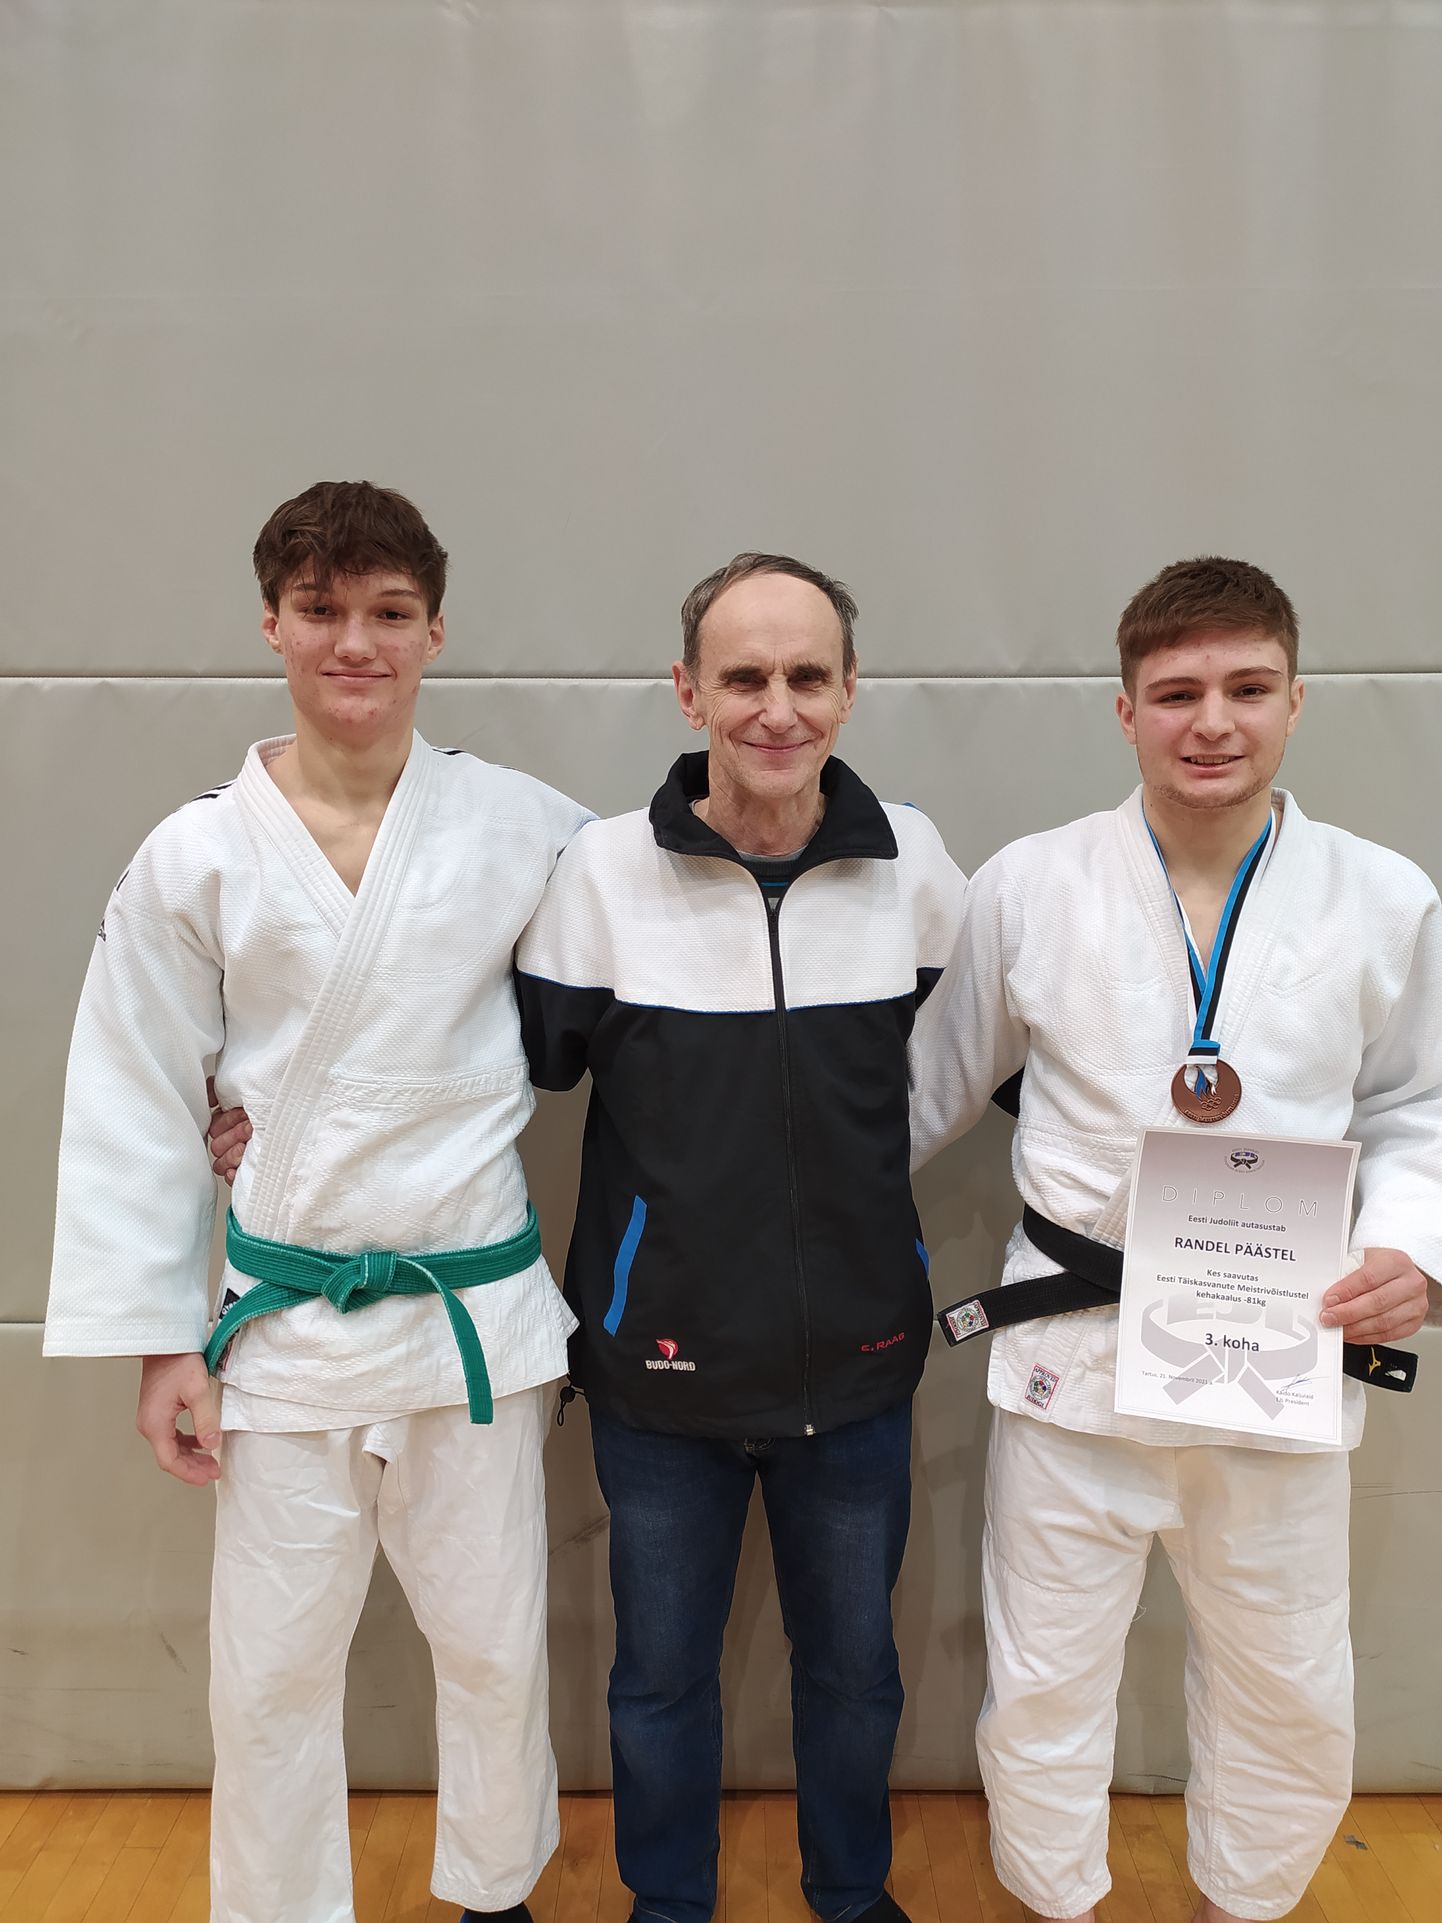 Võru judoklubi Rei treener Enno Raag koos Randel Päästeli (paremal) ja Randy Nageliga.